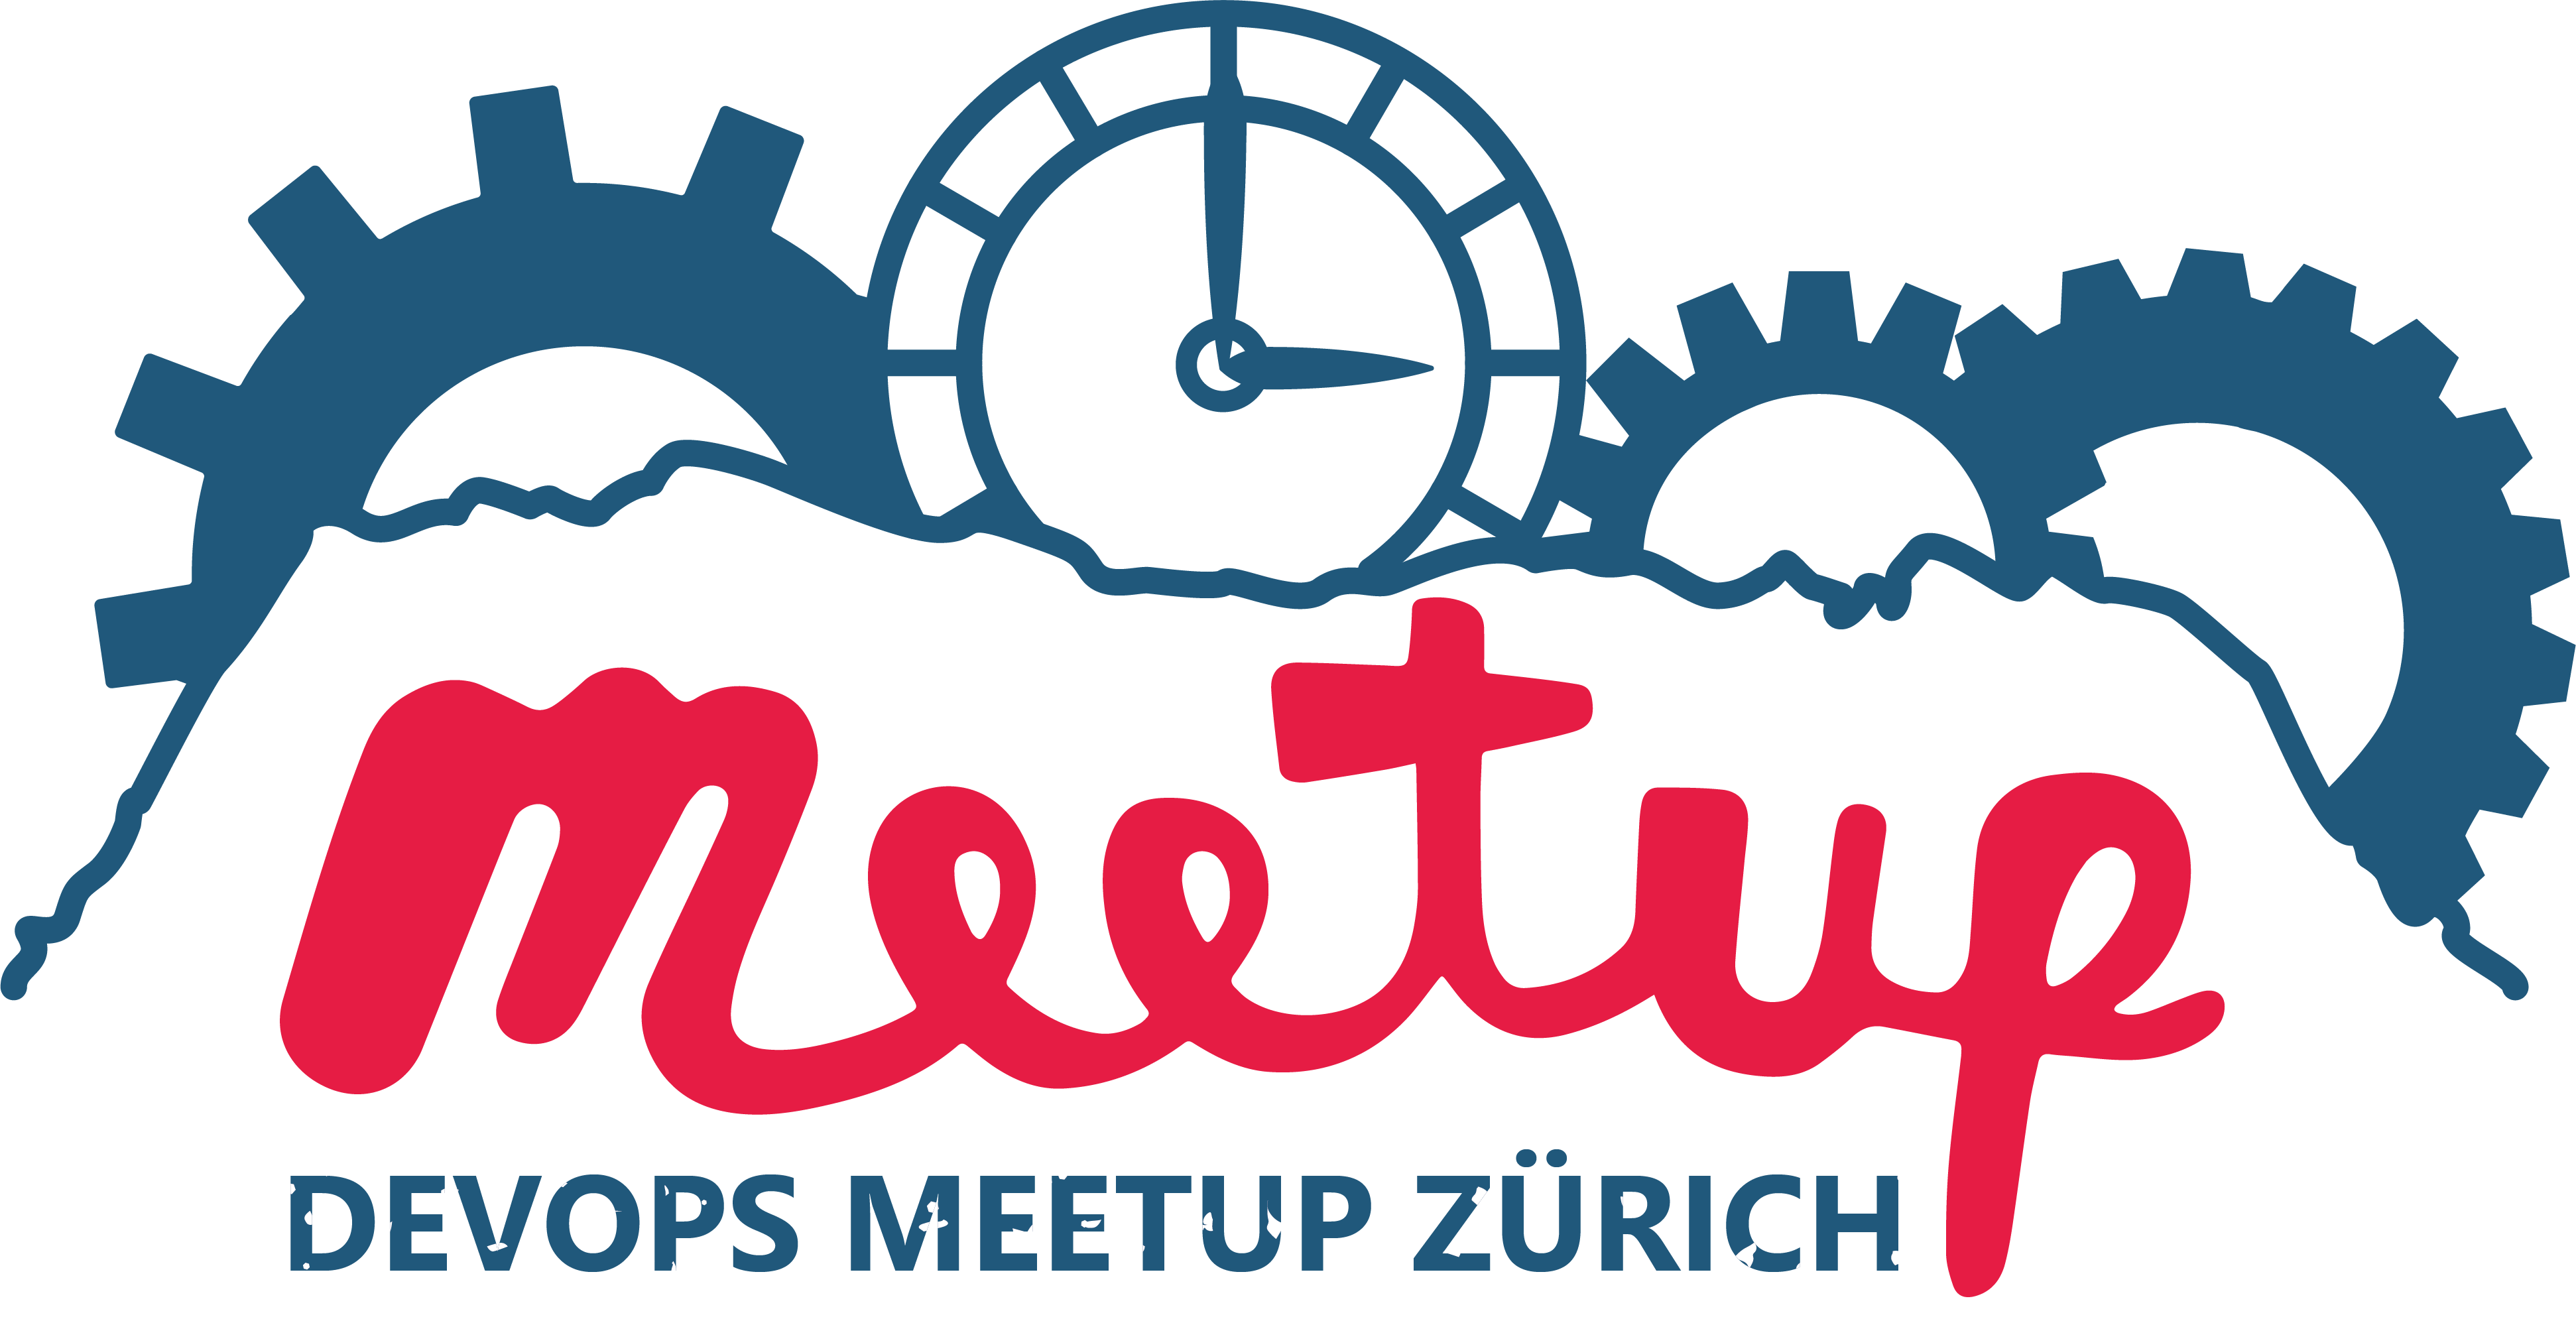 DevOps Meetup Zurich